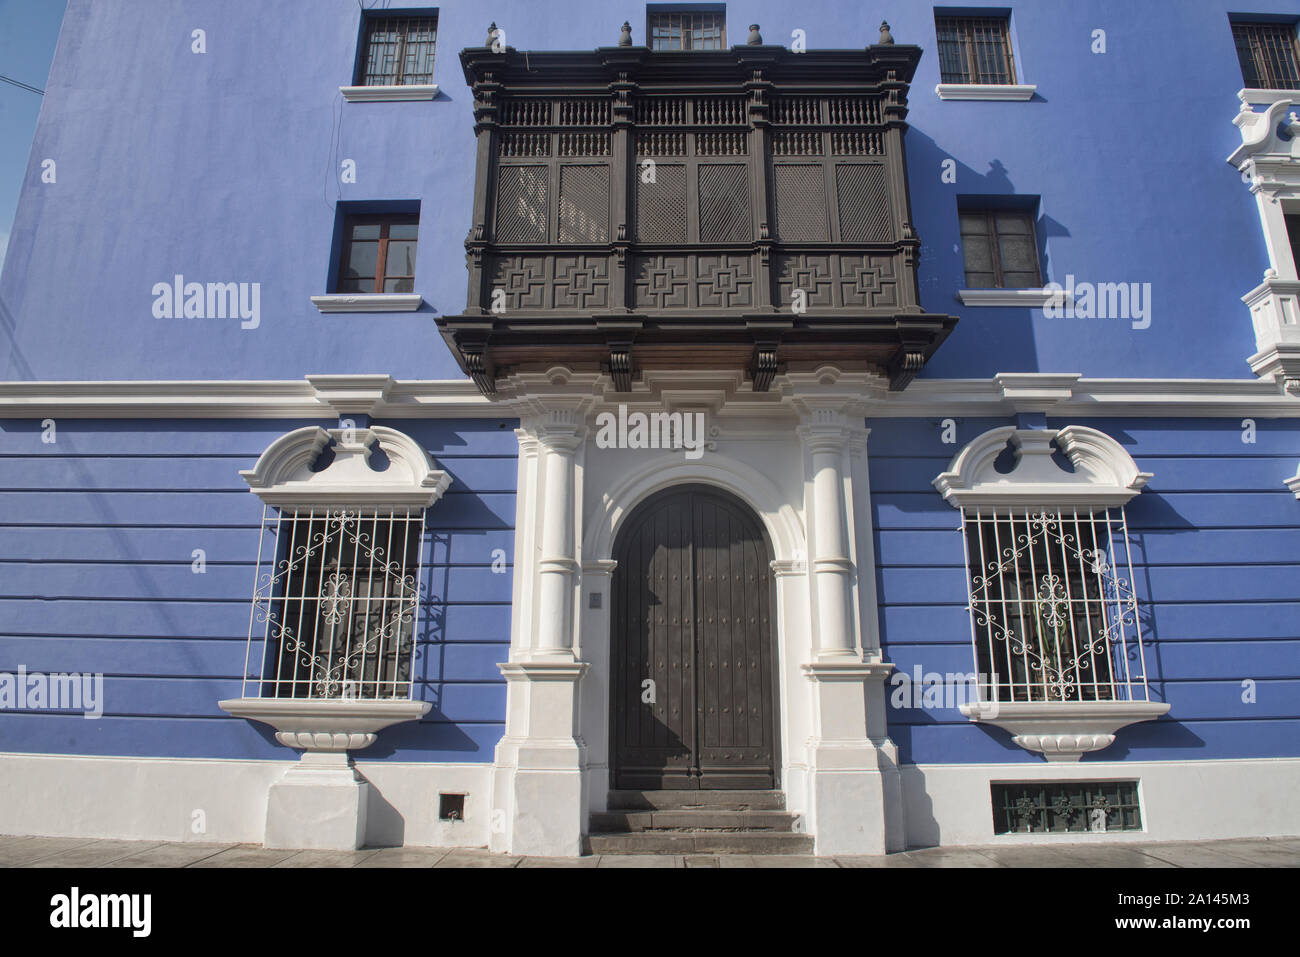 Beneficencia Publica bâtiment, une partie de l'architecture de la ville historique de Trujillo, Pérou Banque D'Images